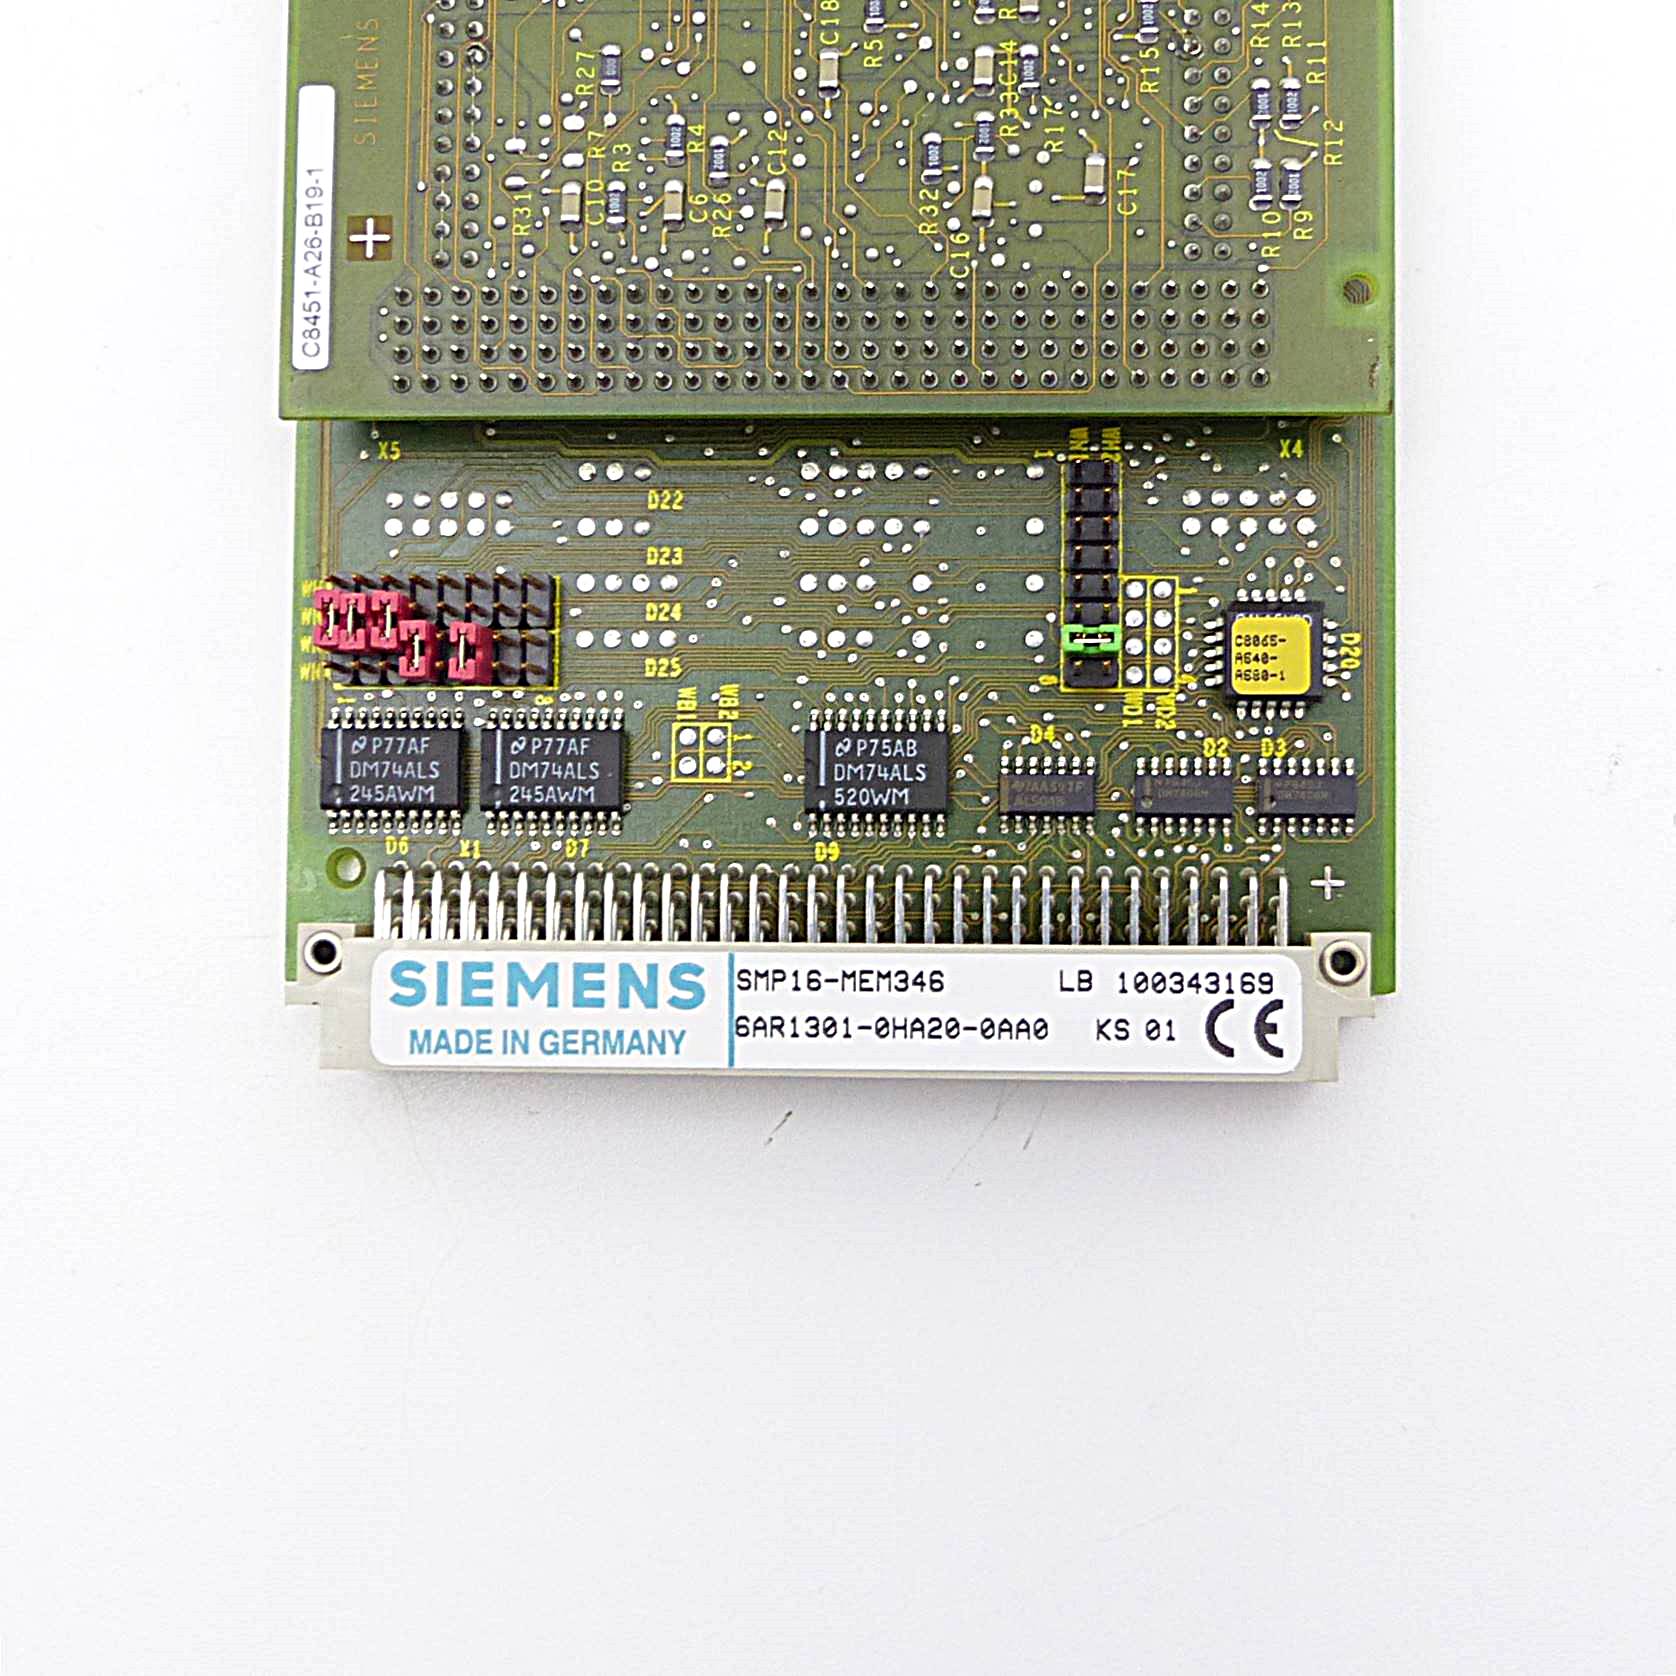 SMP16-MEM346 